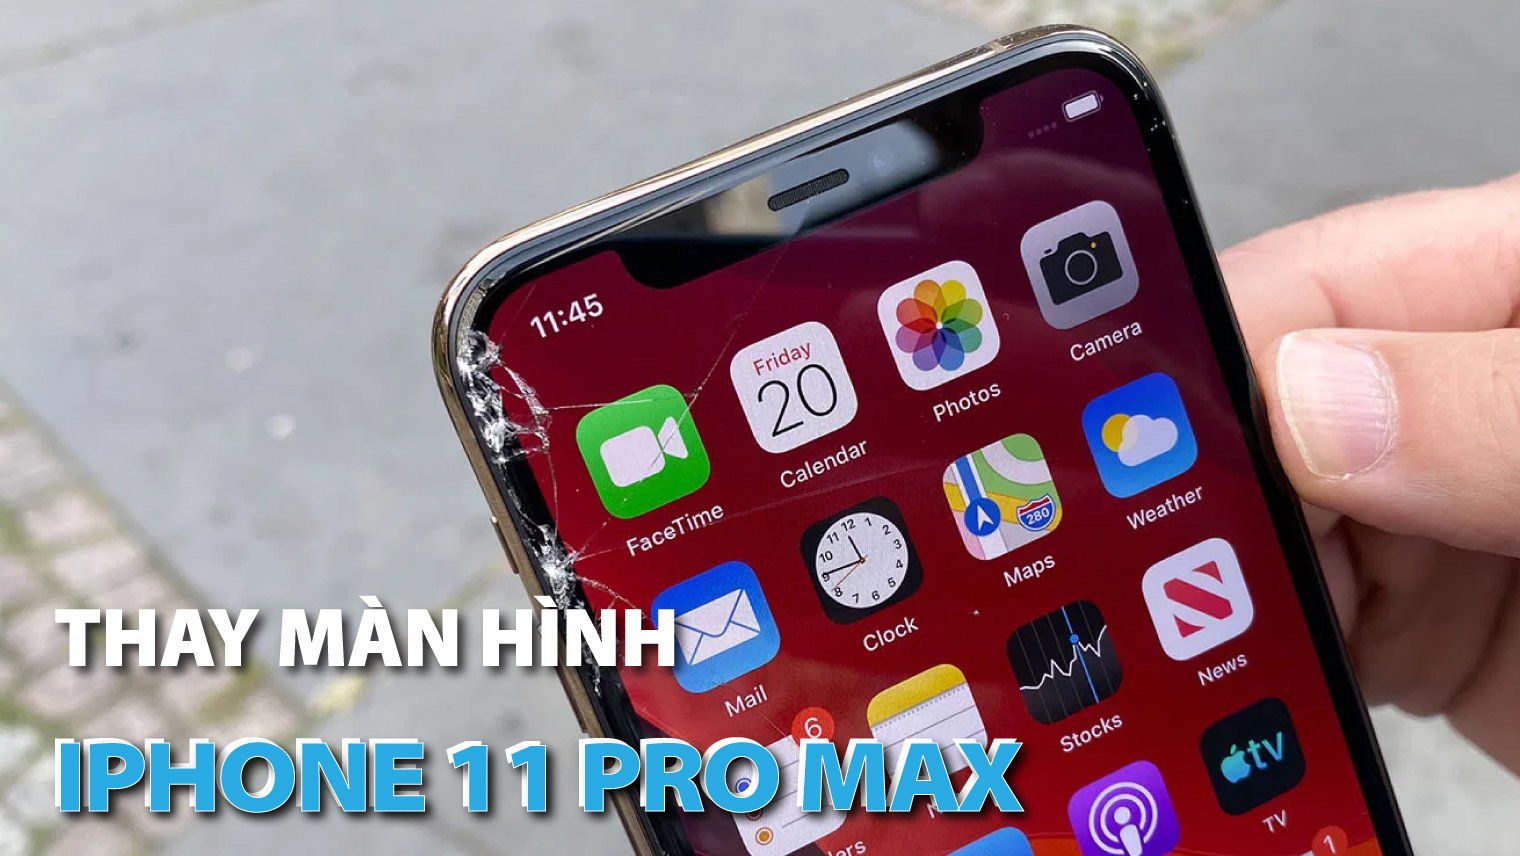 Thay man hinh iPhone 11 Pro Max Ha Noi